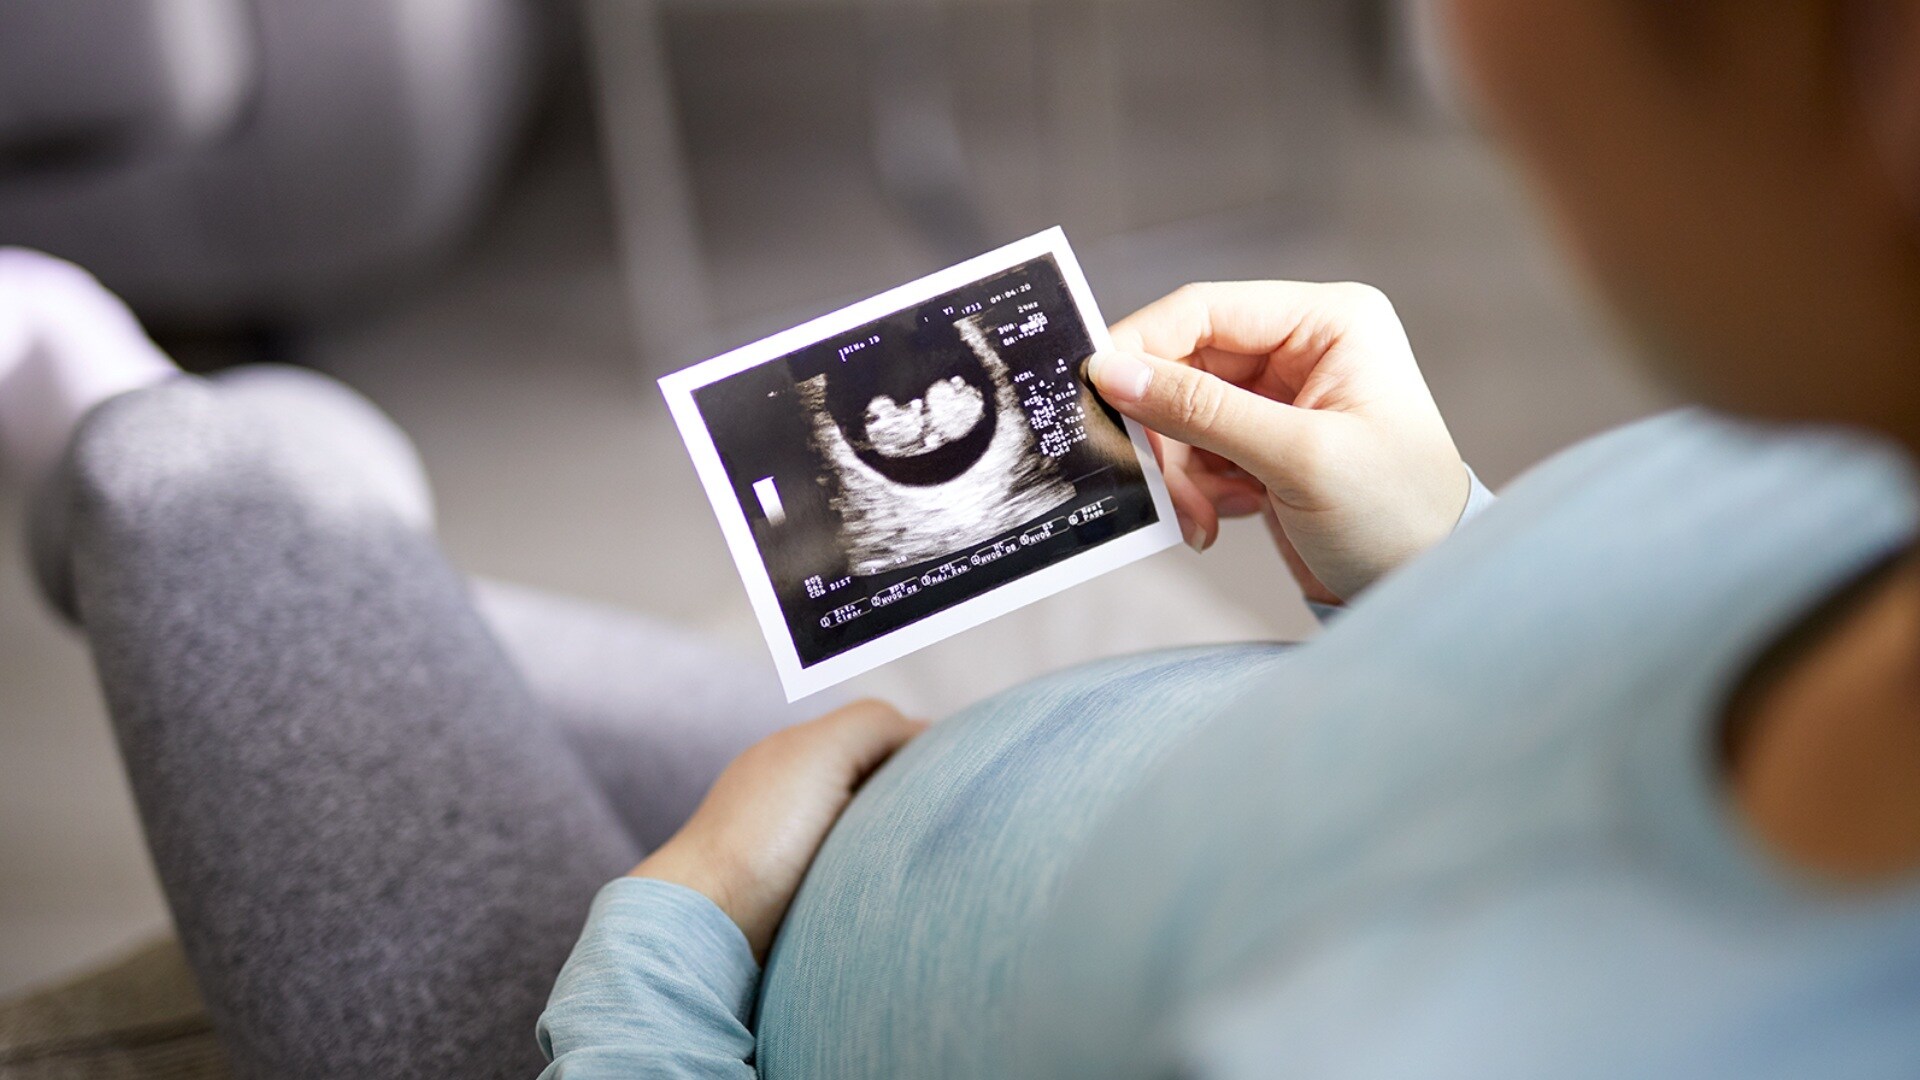 Pregnancy+ oleh Philips Avent berkerjasama dengan Alodokter tingkatkan pelayanan perawatan dan dukungan kehamilan di Indonesia